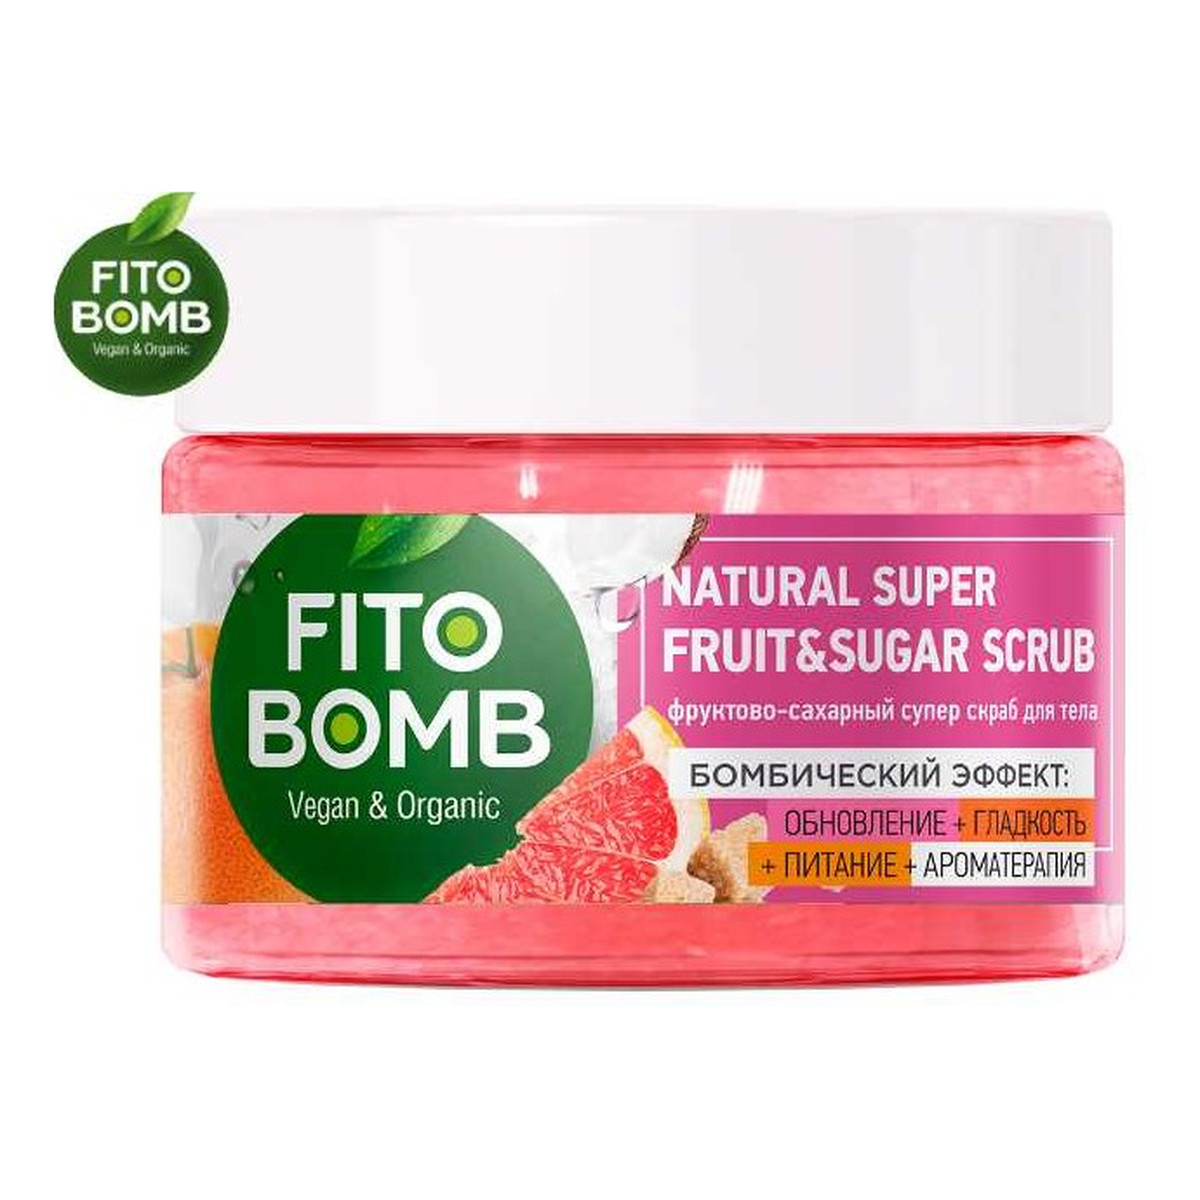 Fitokosmetik FITO BOMB Cukrowy Super Peeling do Ciała Odnowa + Gładkość + Odżywienie + Aromaterapia 250ml